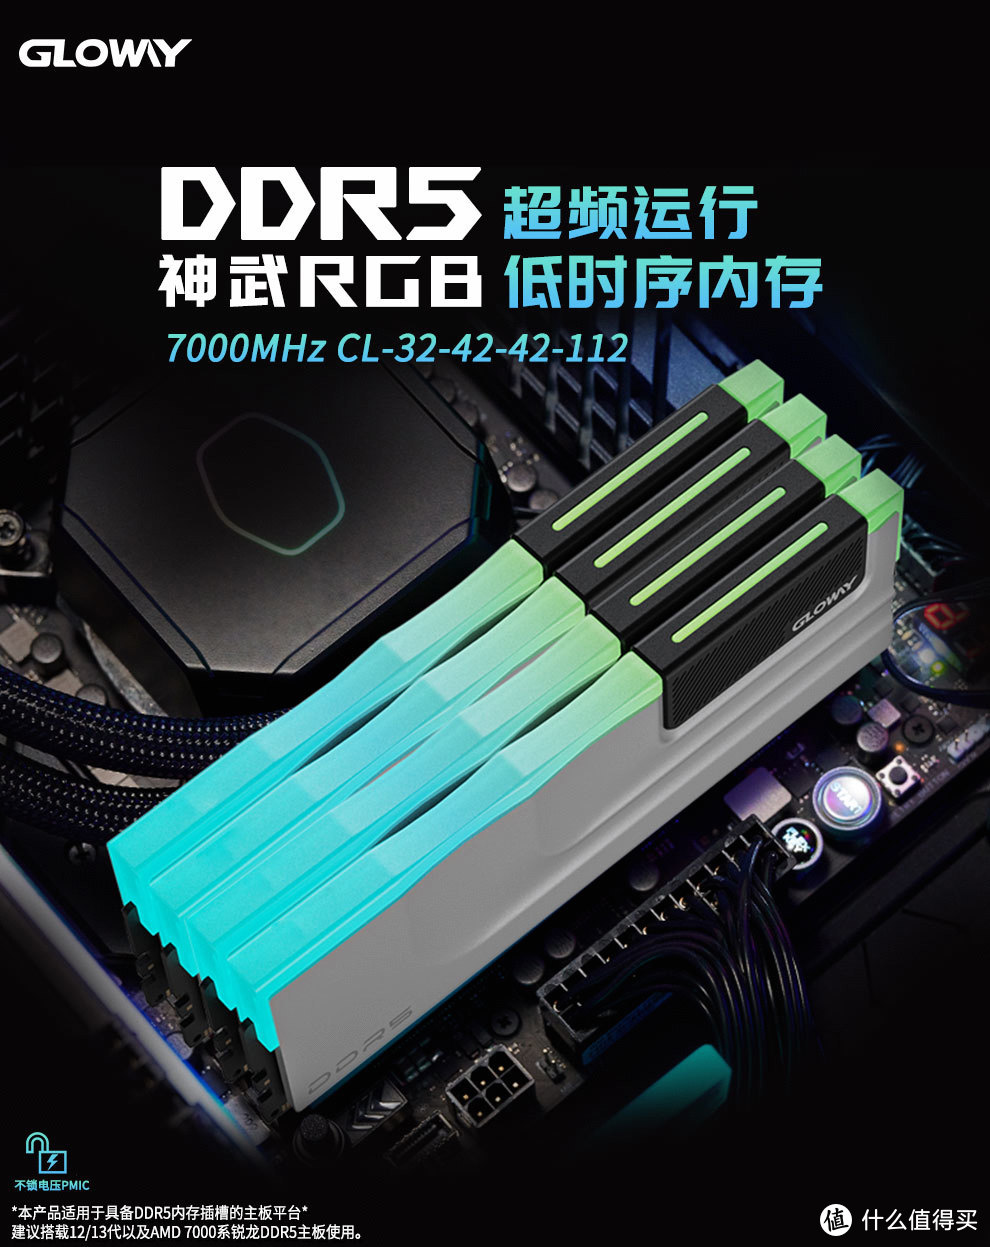 打响高端内存性价比的第一枪，光威神武DDR5 7000新品特惠上线